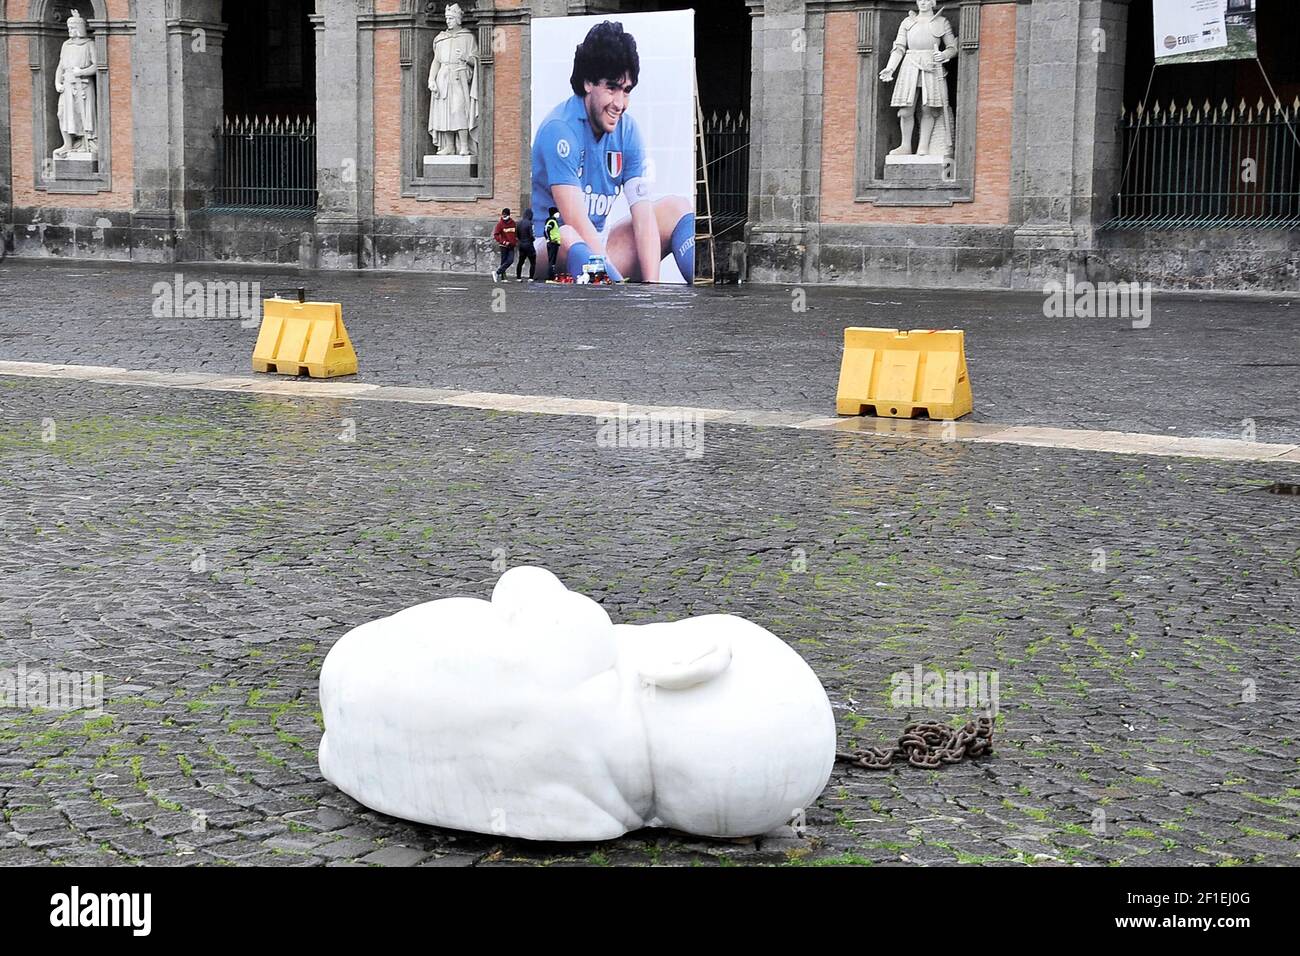 Photo géante de Diego Armando Maradano placée sur la Piazza Plebiscito, où se trouve encore la sculpture de l'enfant accroupi du sculpteur JAGO. Italie Banque D'Images